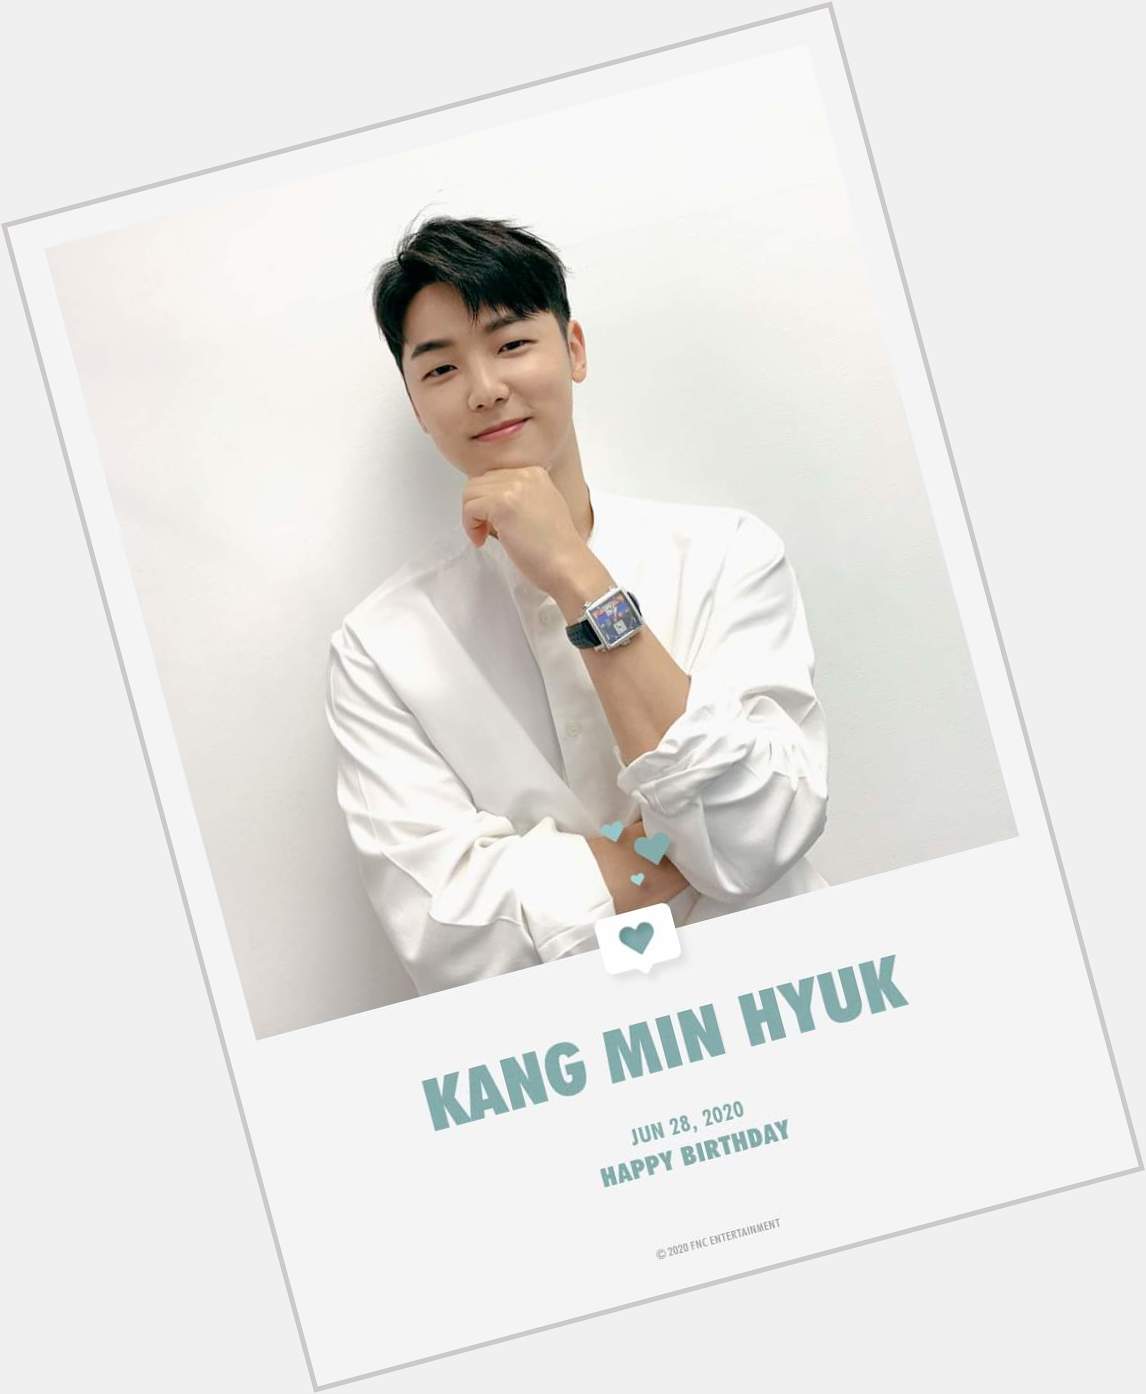 Happy Birthday
Kang min hyuk 06282020 